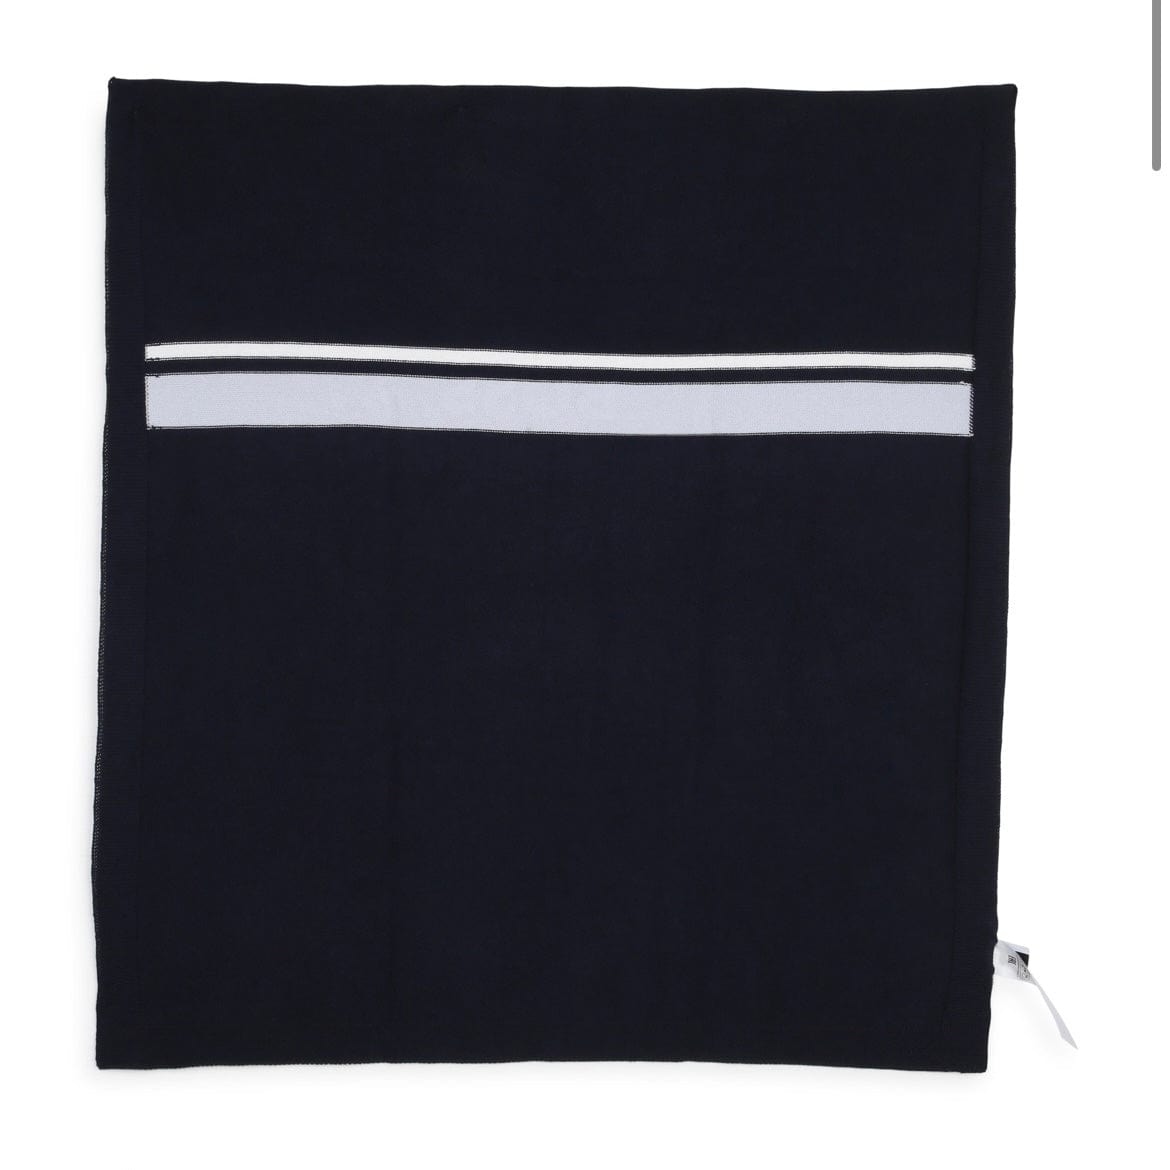 BOSS - Blanket Knitted - Navy